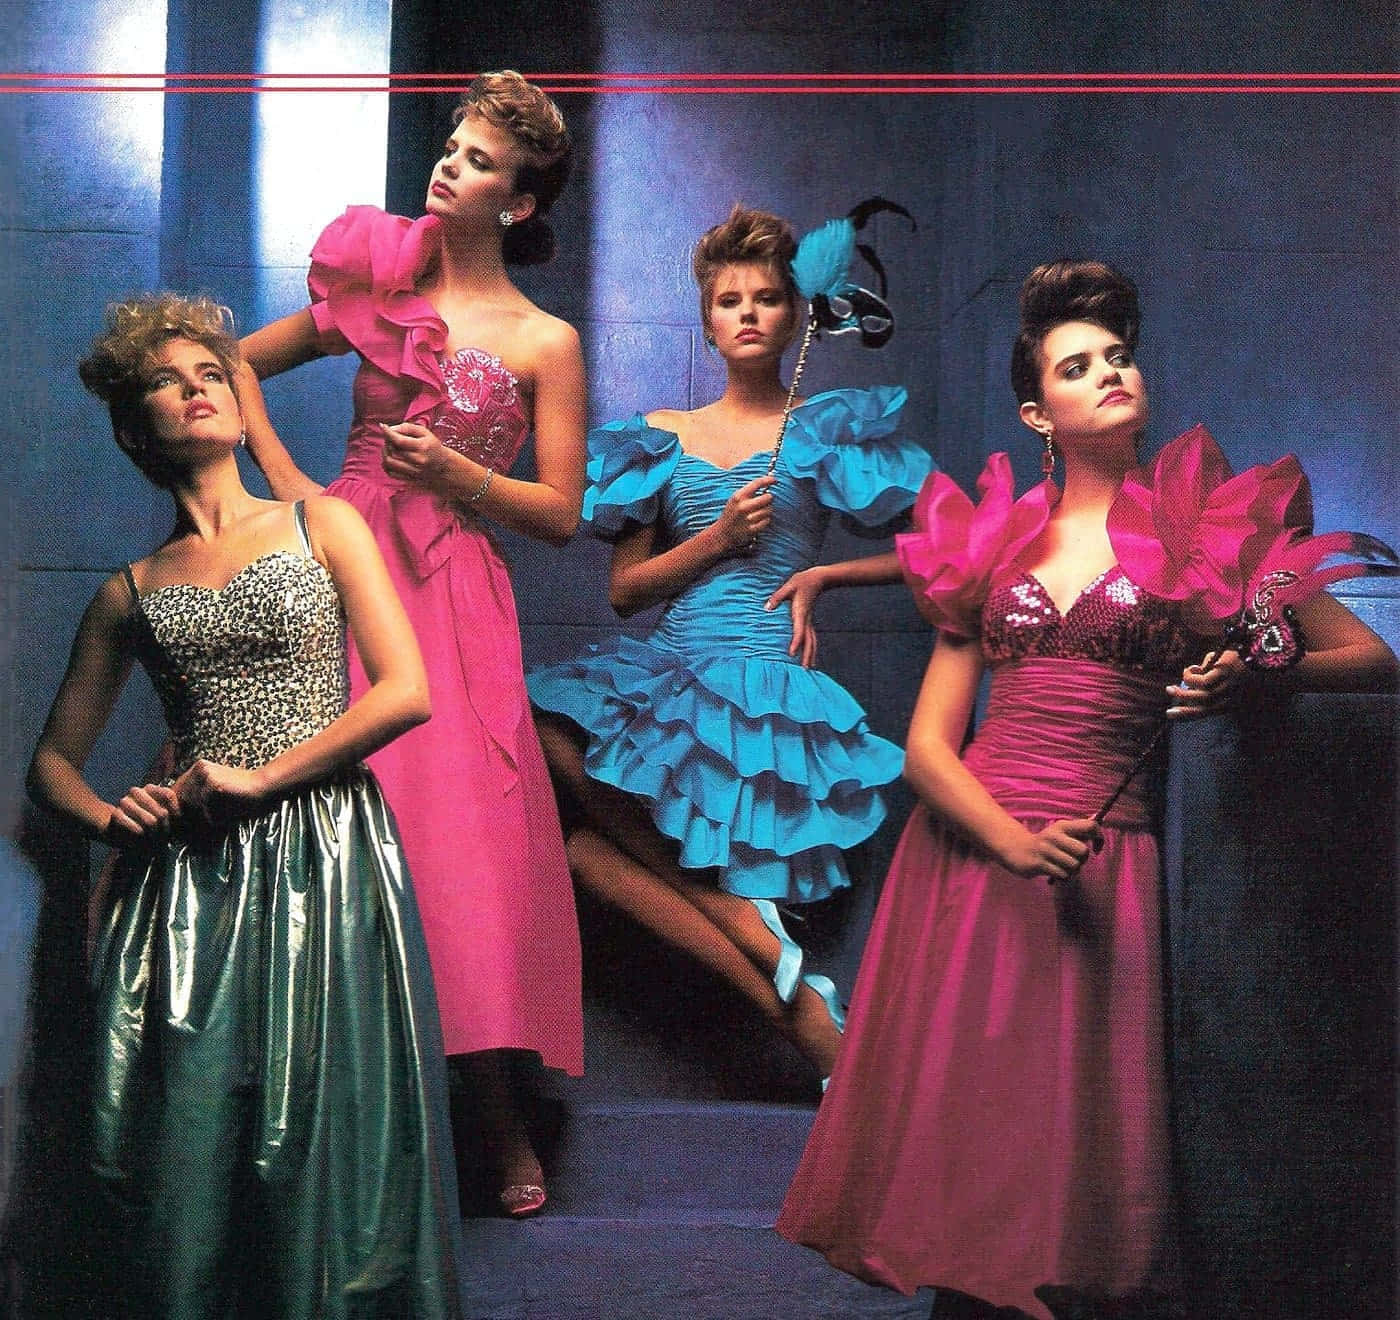 Imagende Mujeres En Vestidos Y Máscaras De Los Años 80 En Un Baile De Graduación.